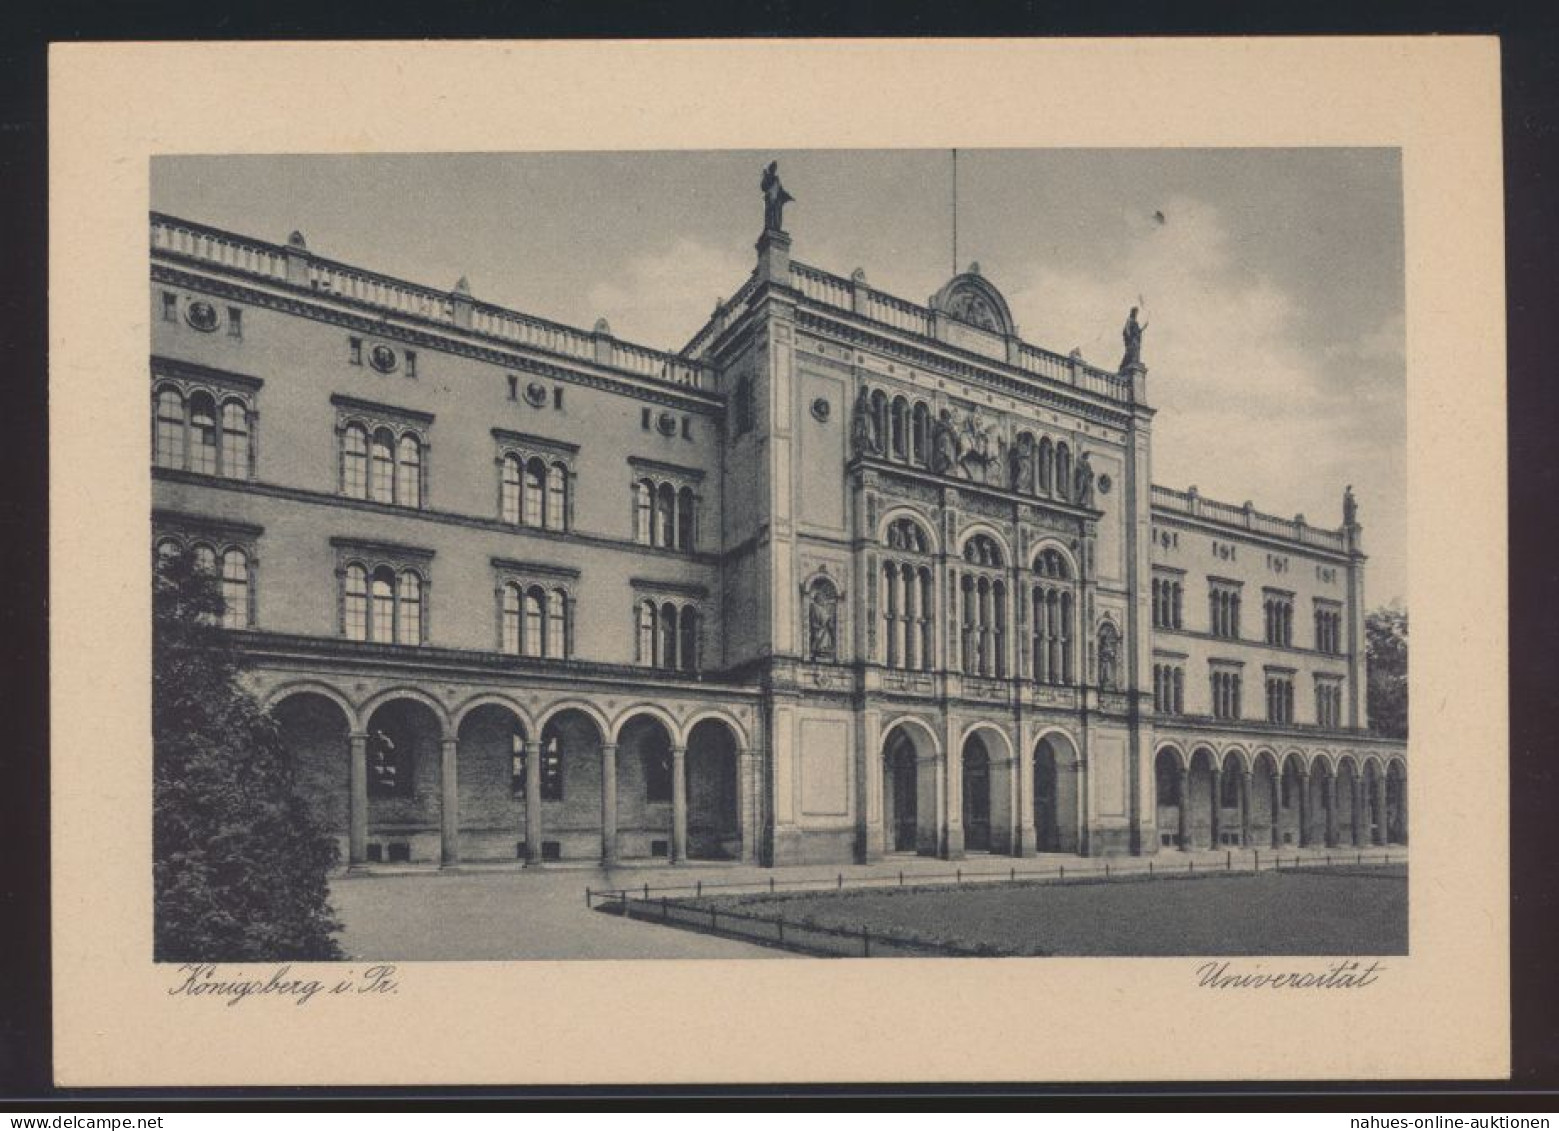 Ansichtskarte Königsberg Universität Mit Sonderstempel 400 Jahre Marke Herzog - Ostpreussen